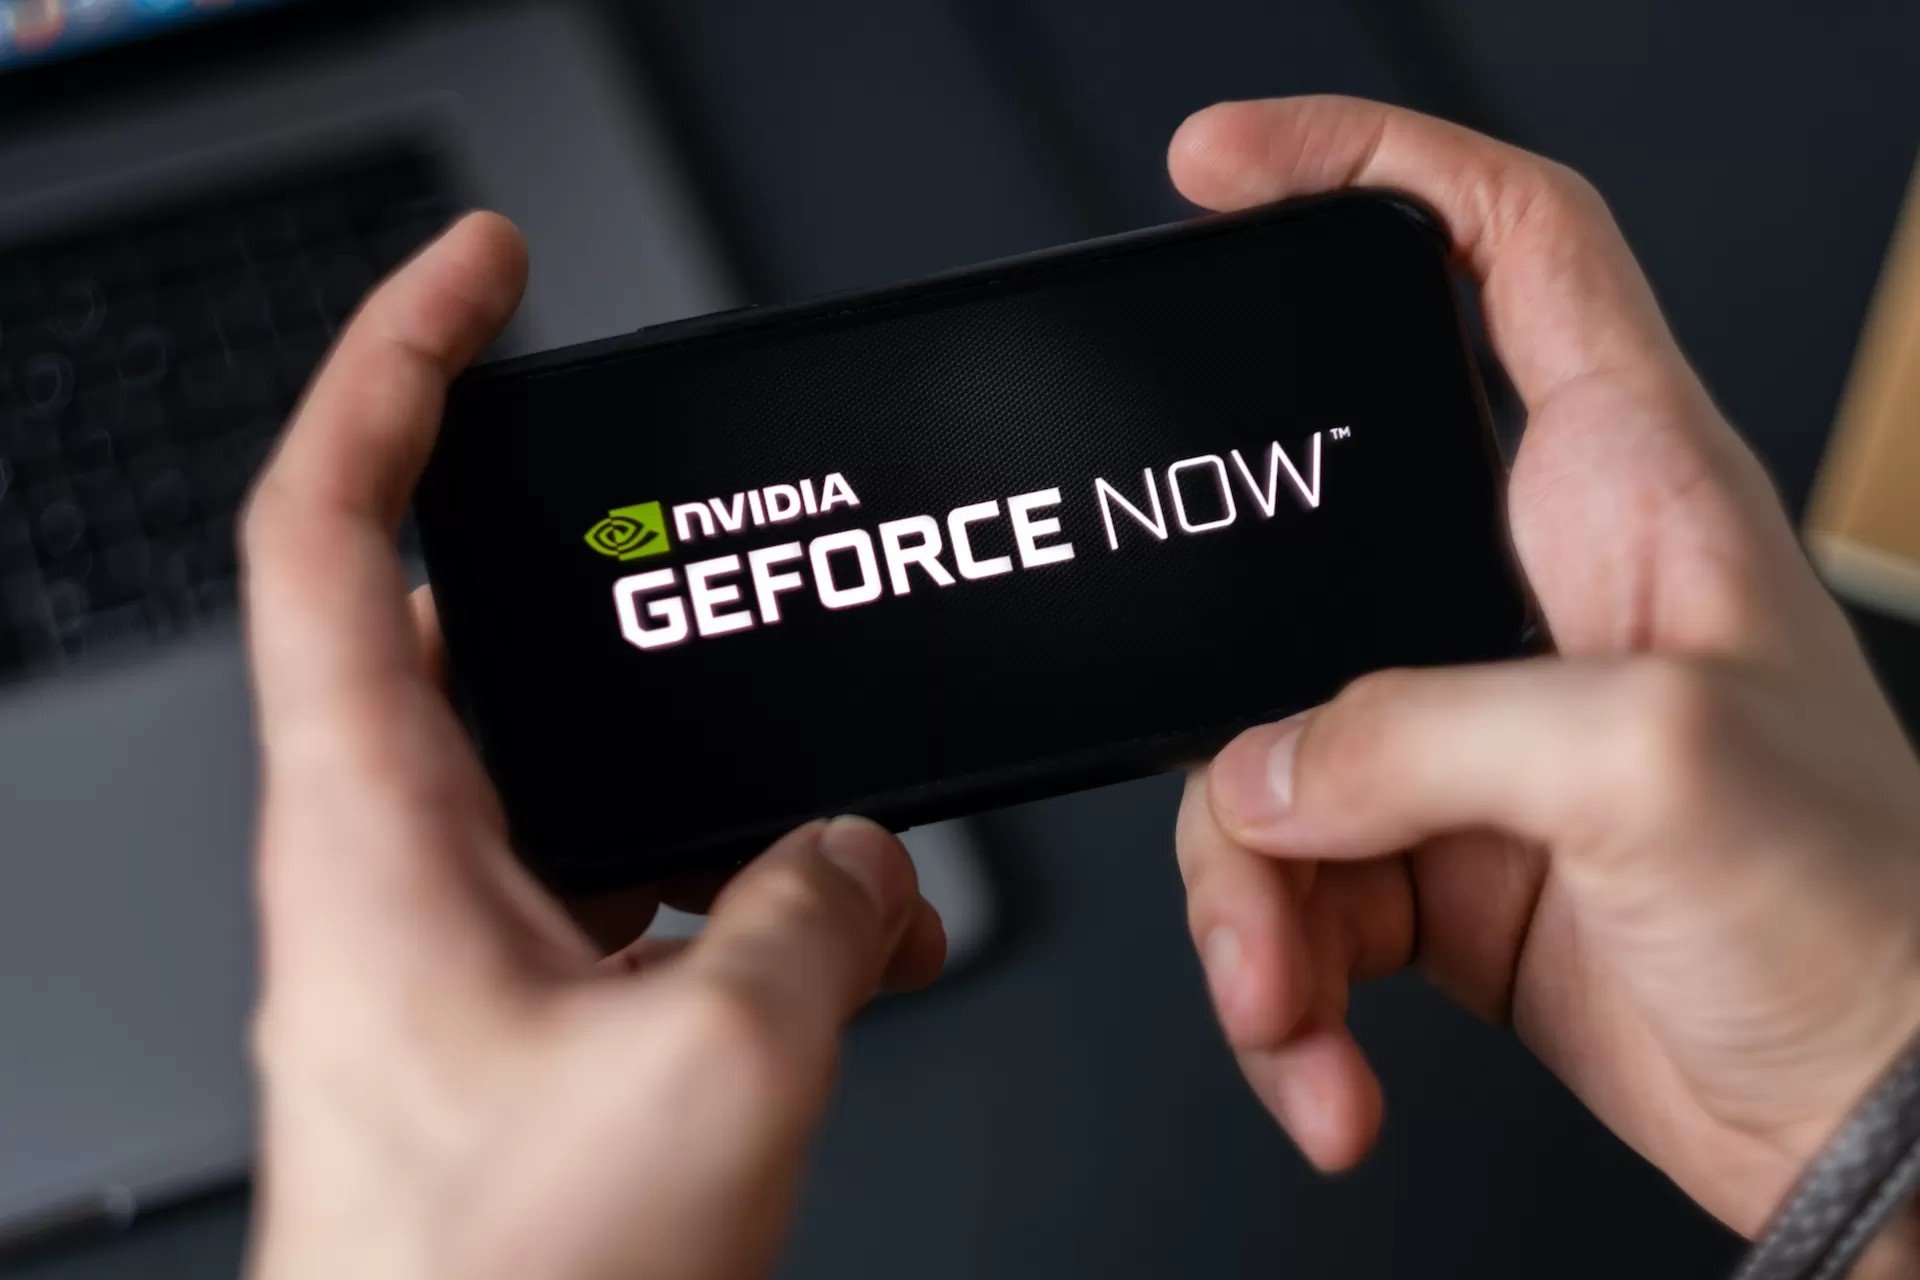 GeForce Now: app ganha versão final em TVs LG e inclui opções de